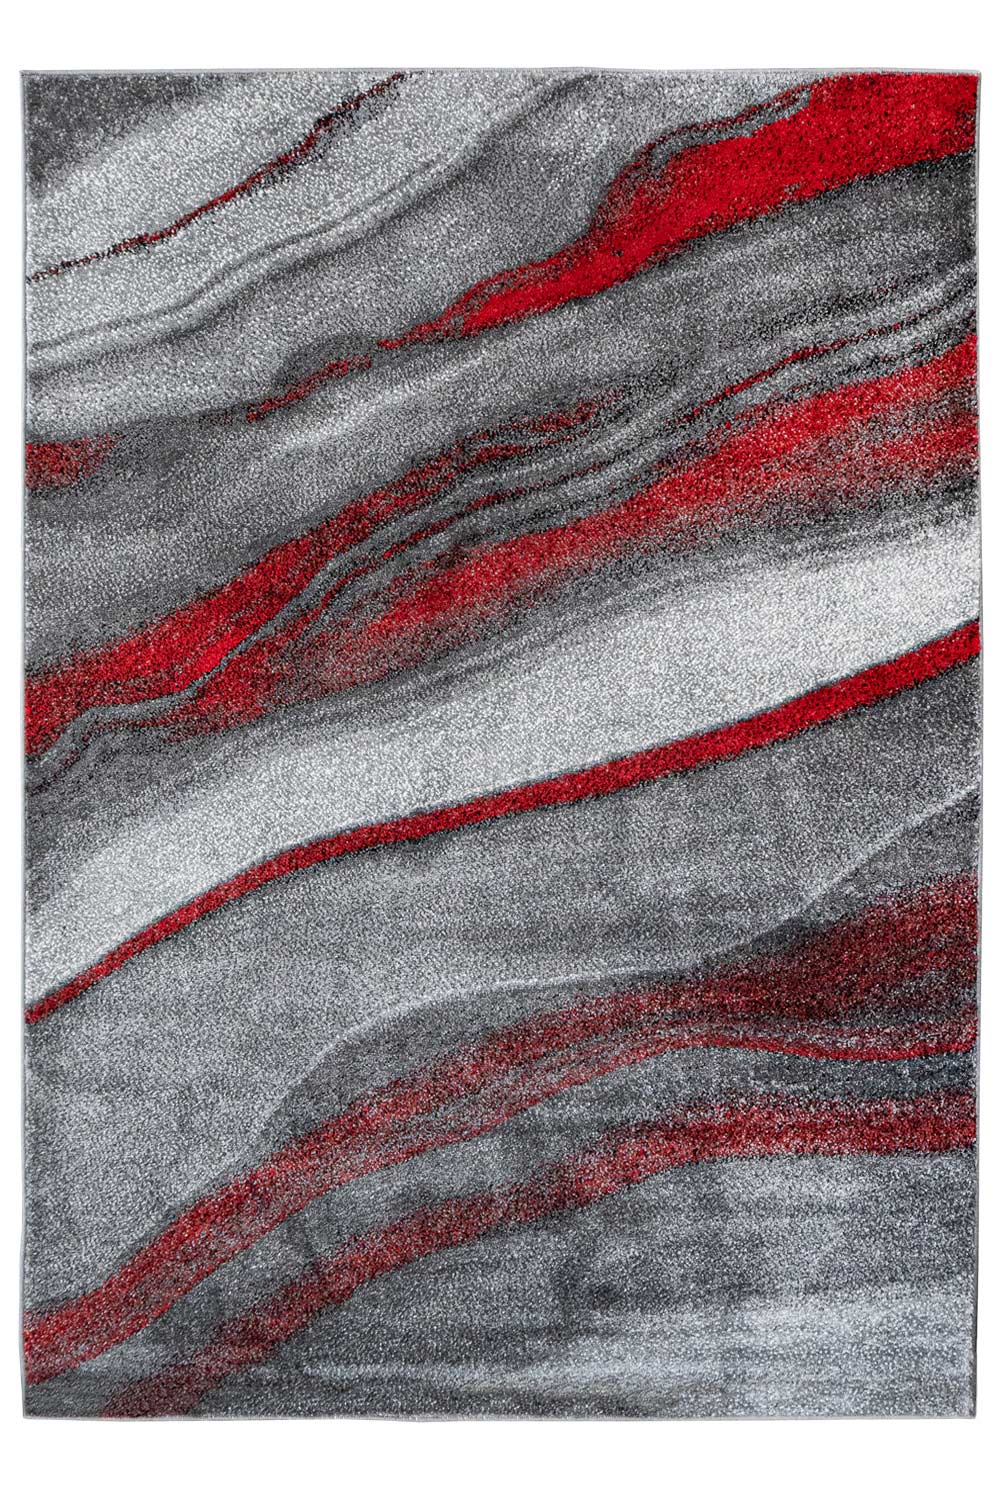 Kusový koberec Calderon 1067 Red 140x200 cm